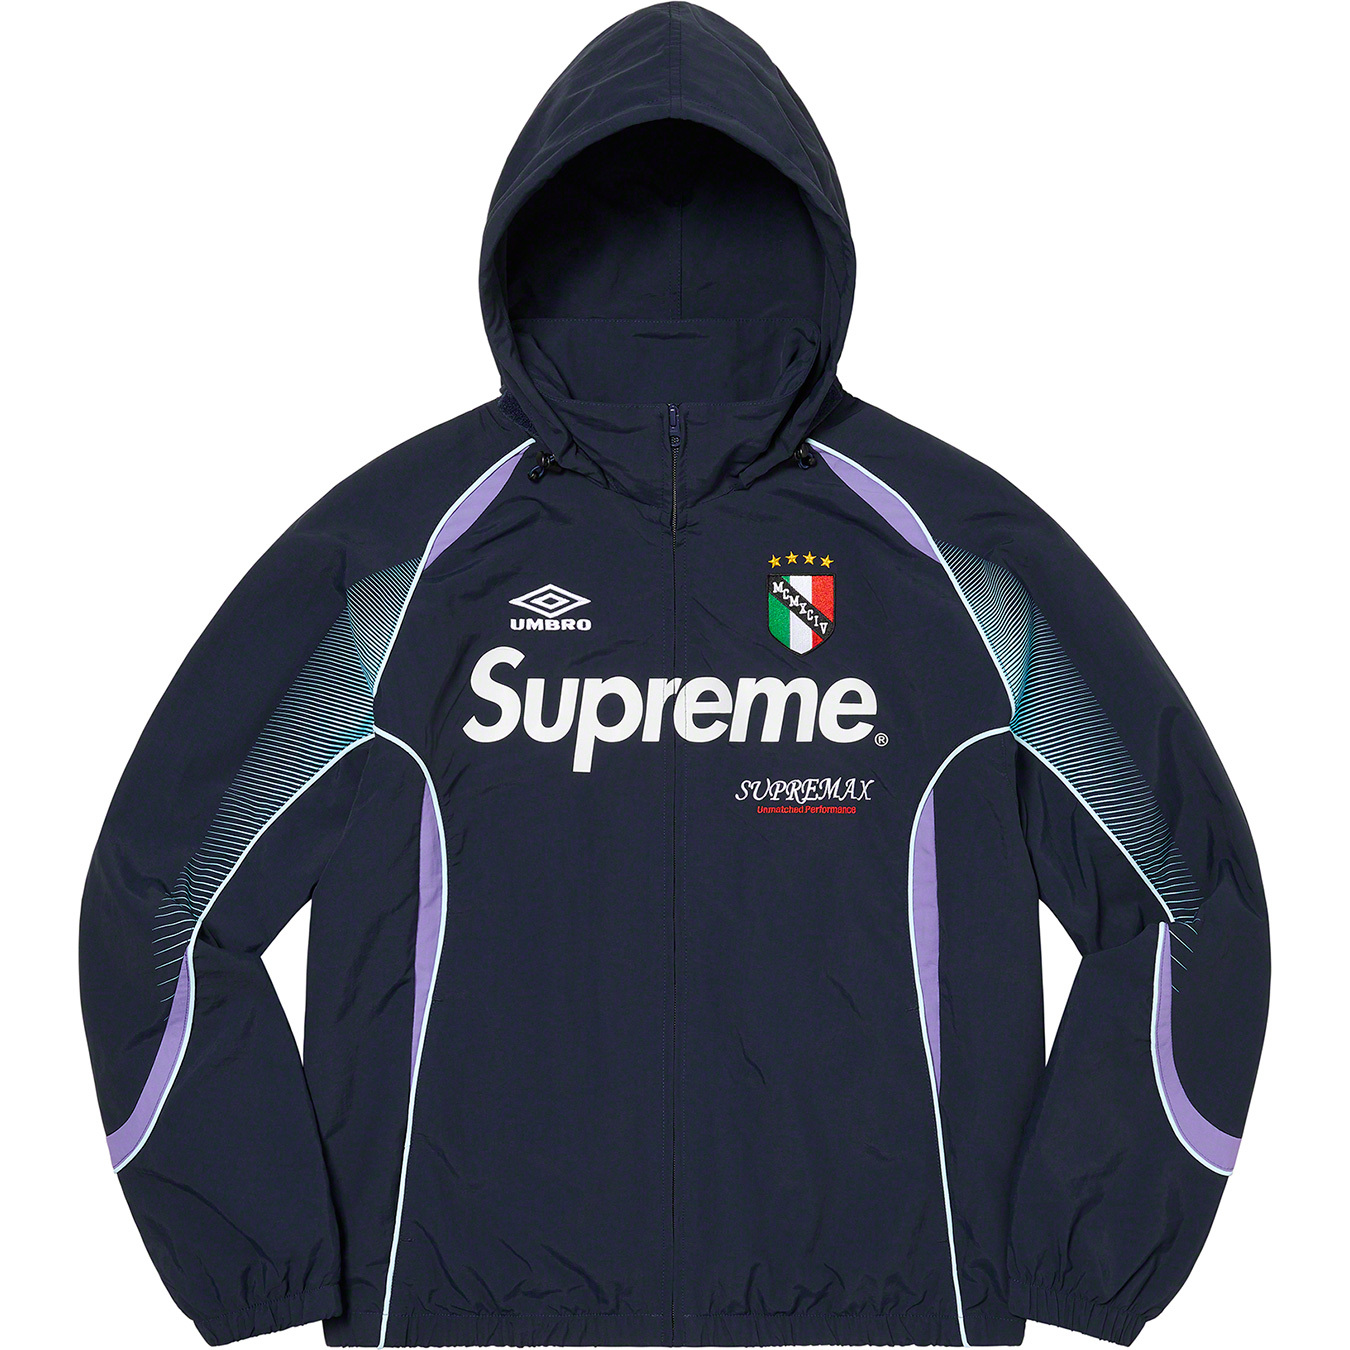 Supreme Umbro Track Jacket Blue  Lサイズ